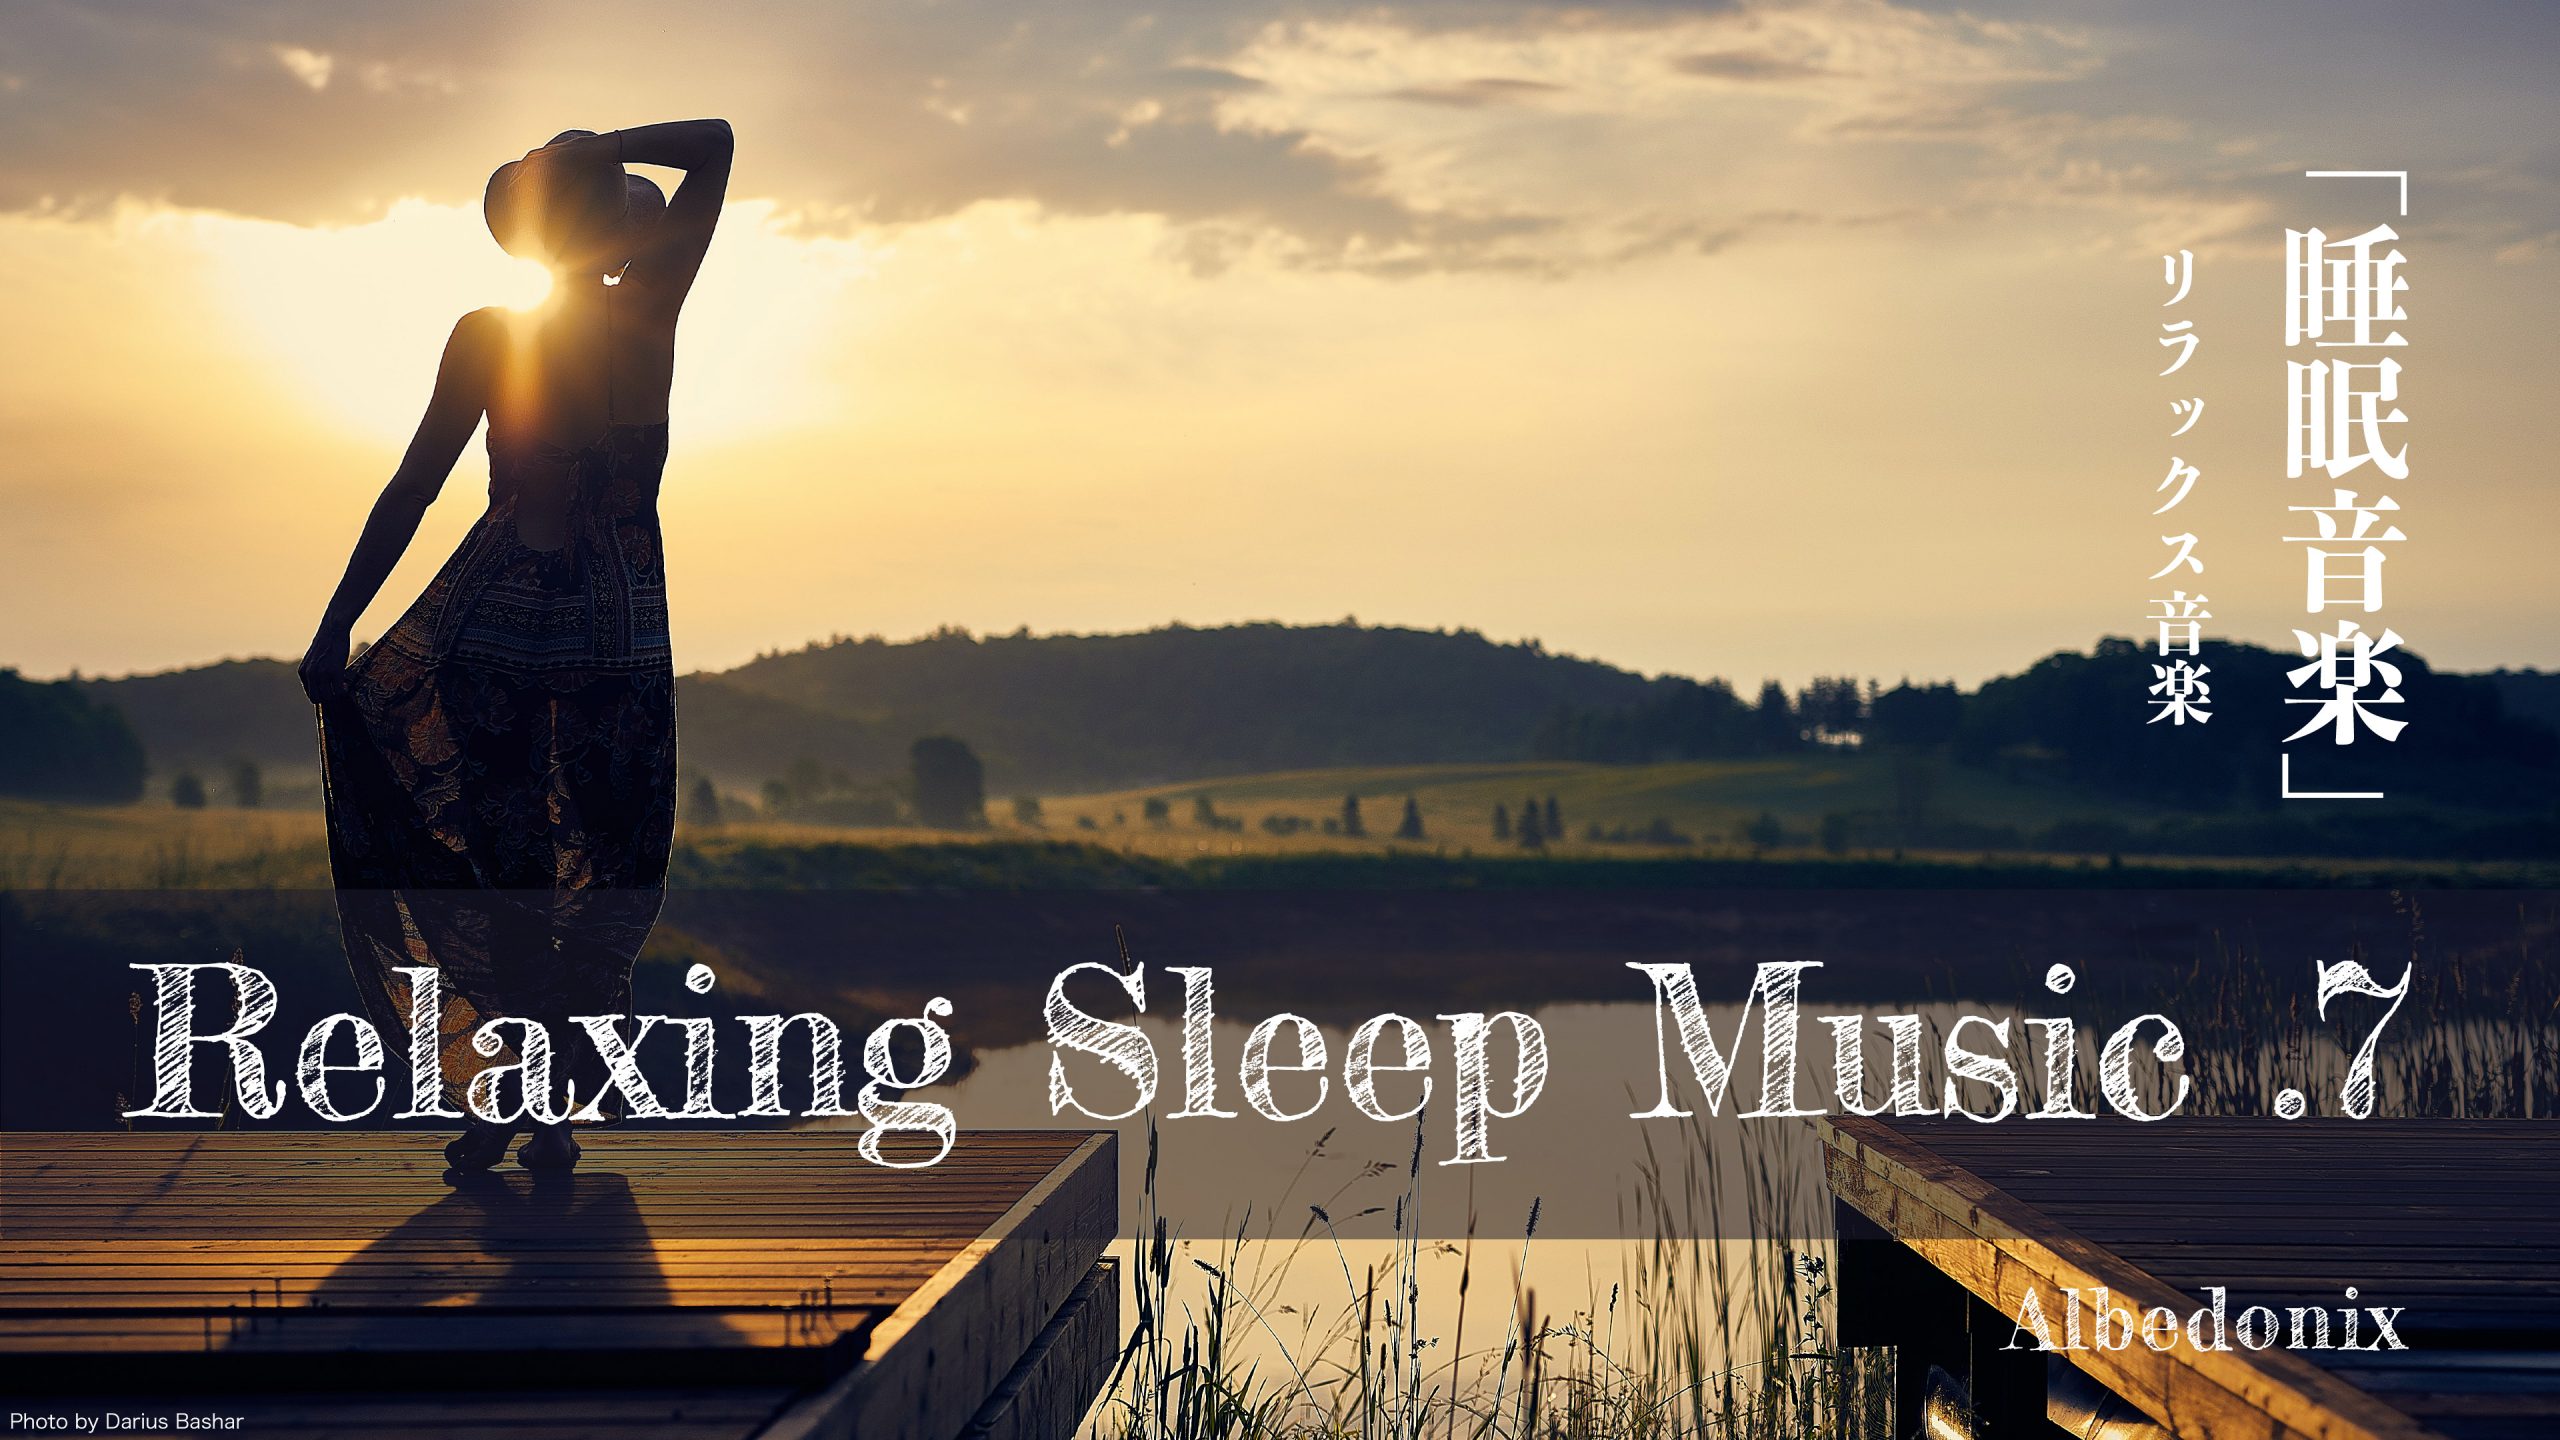 【睡眠】.7 リラックス音楽 睡眠導入、熟睡、BGM、勉強、集中 Albedonix